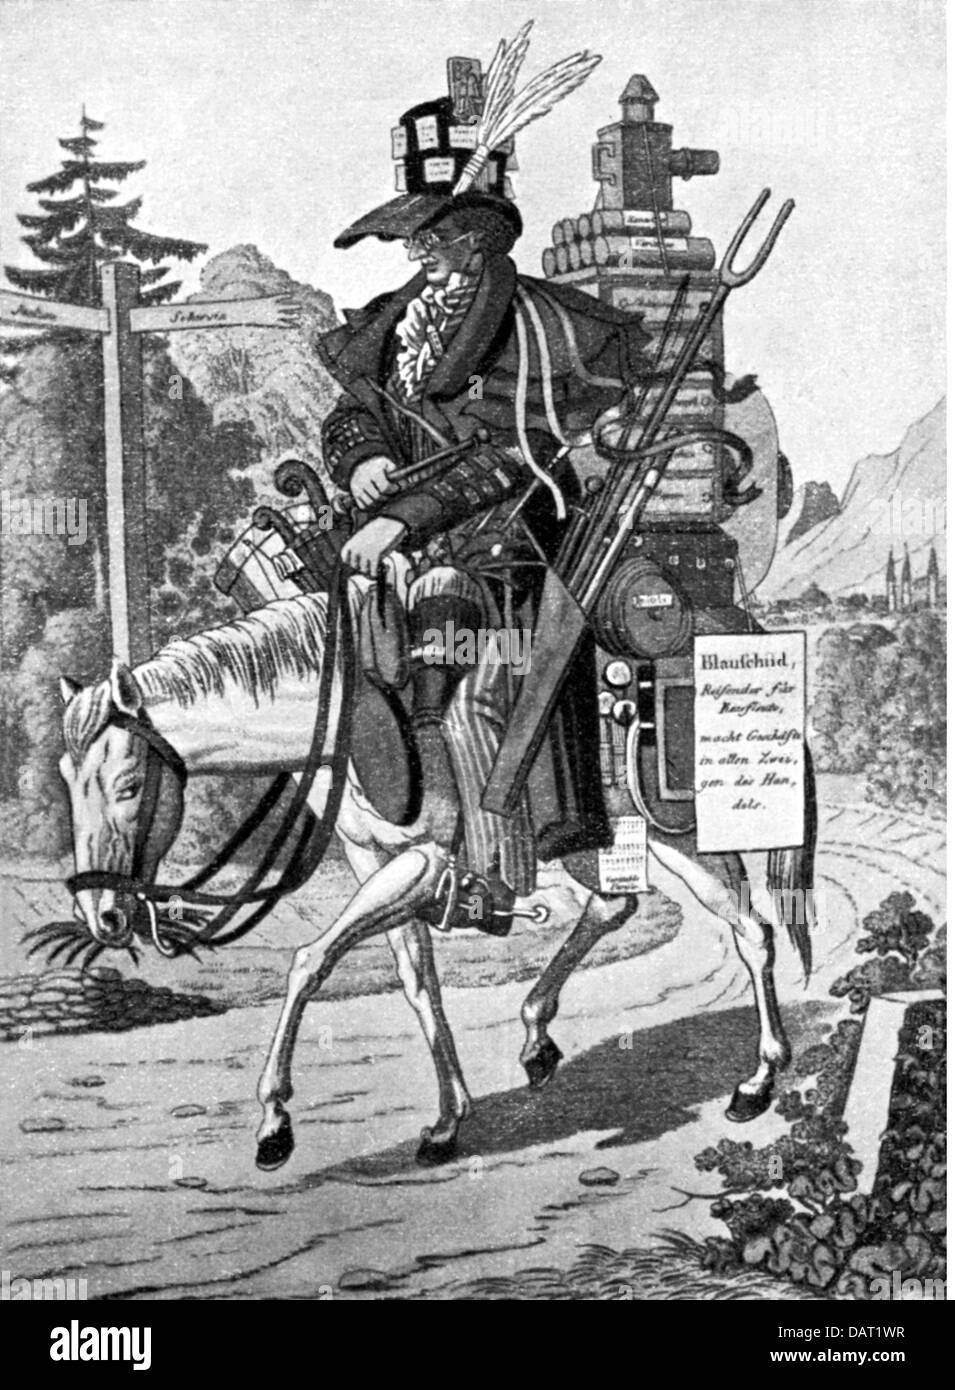 Rothschild, famille, 'The sample rider - Blueshield et ses marchandises', lithographie, Autriche, XIXe siècle, Banque D'Images